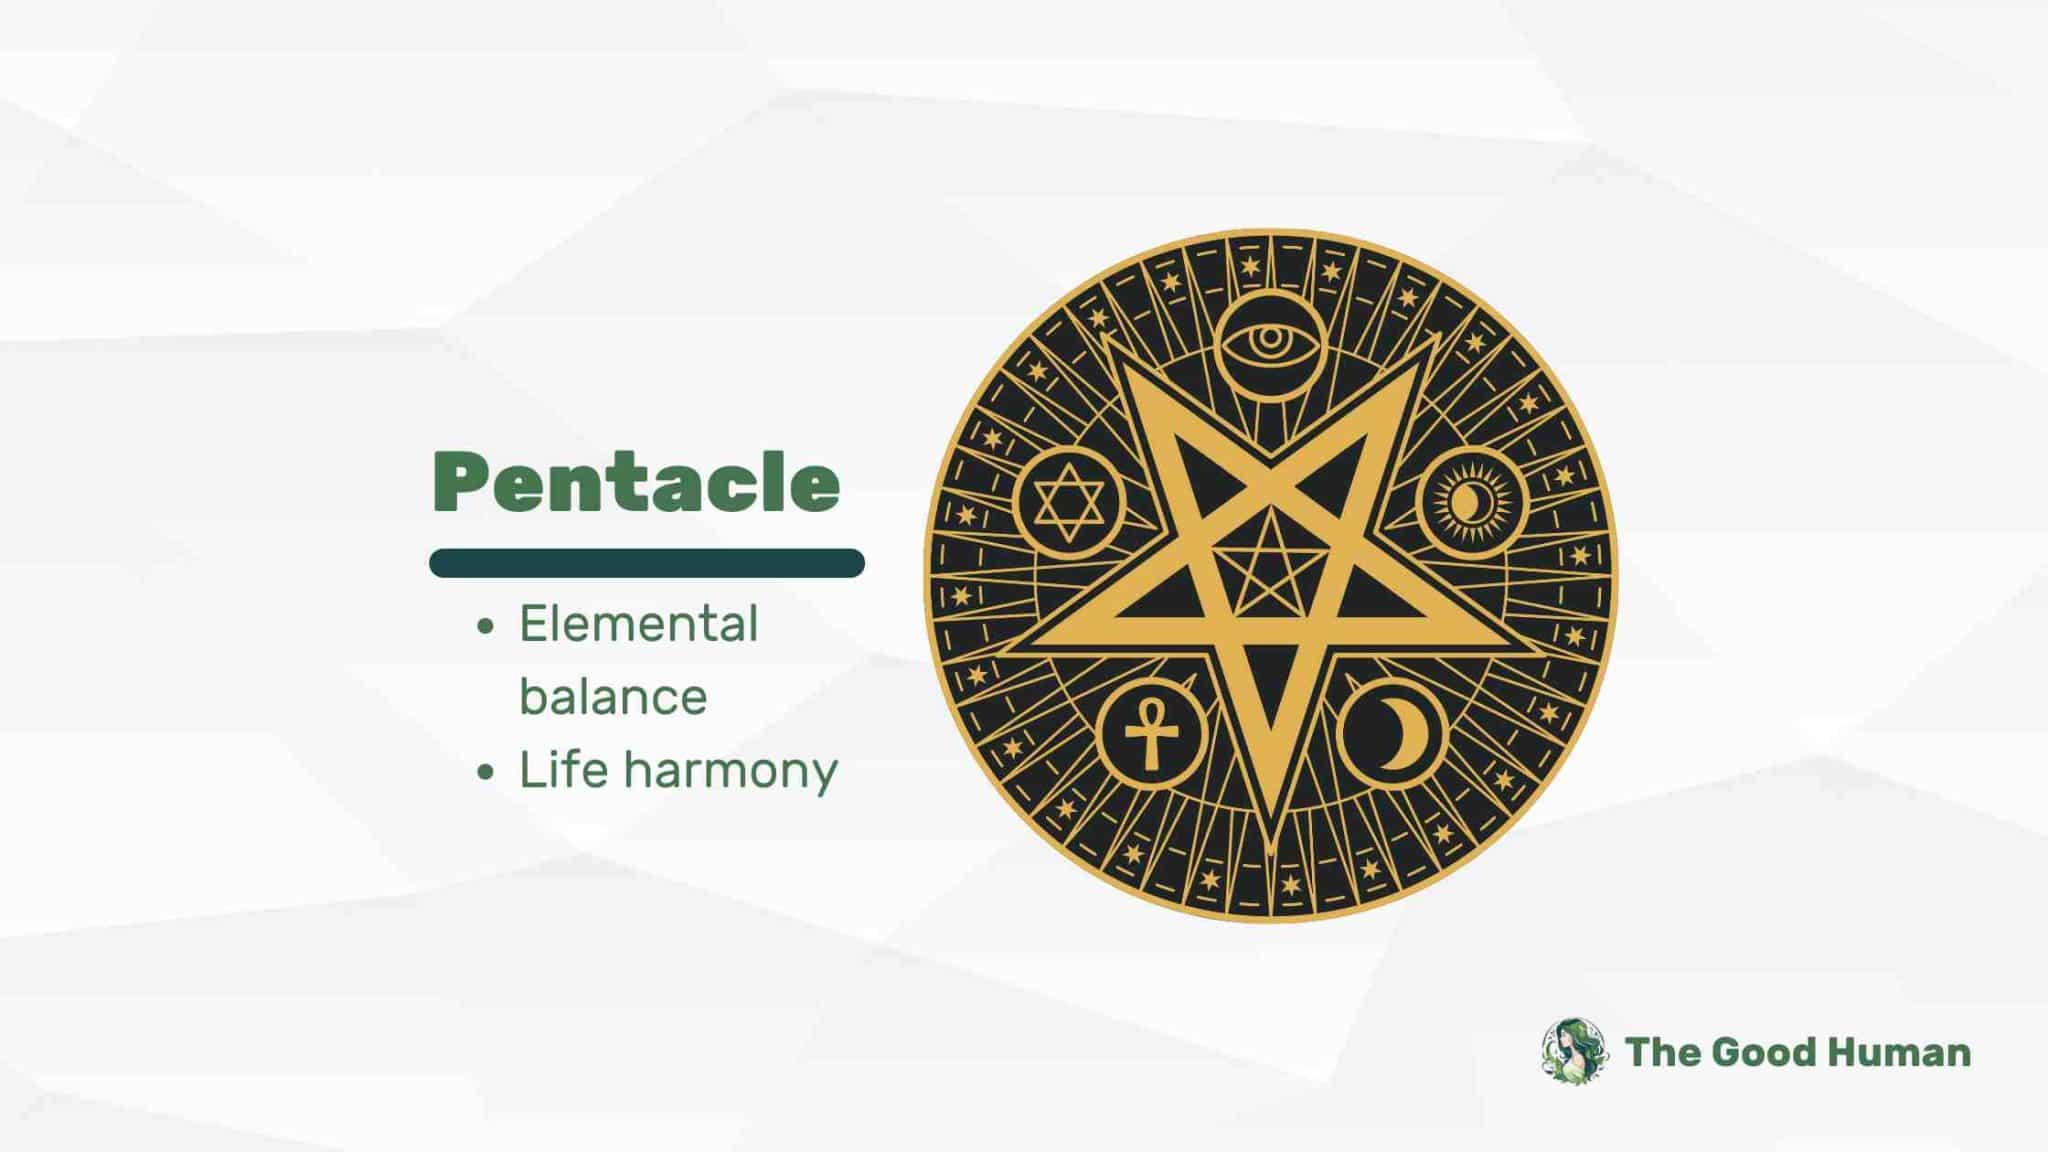 Pentacle symbol